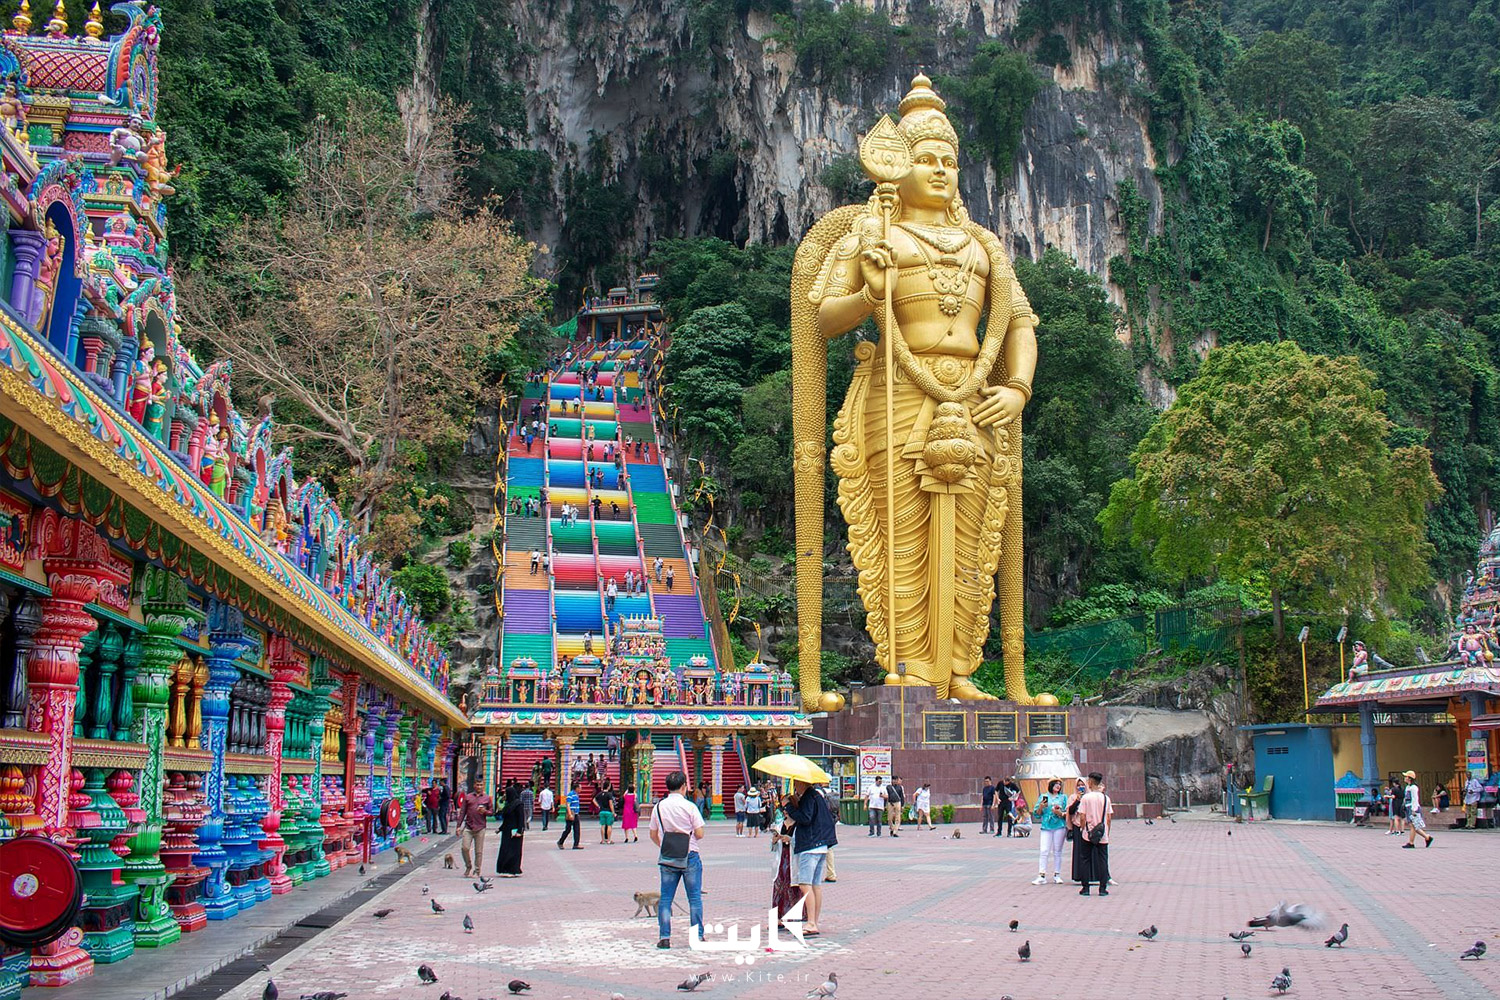 معبدی رنگی یک مجسمه بودای بزرگ و چند گردشگر